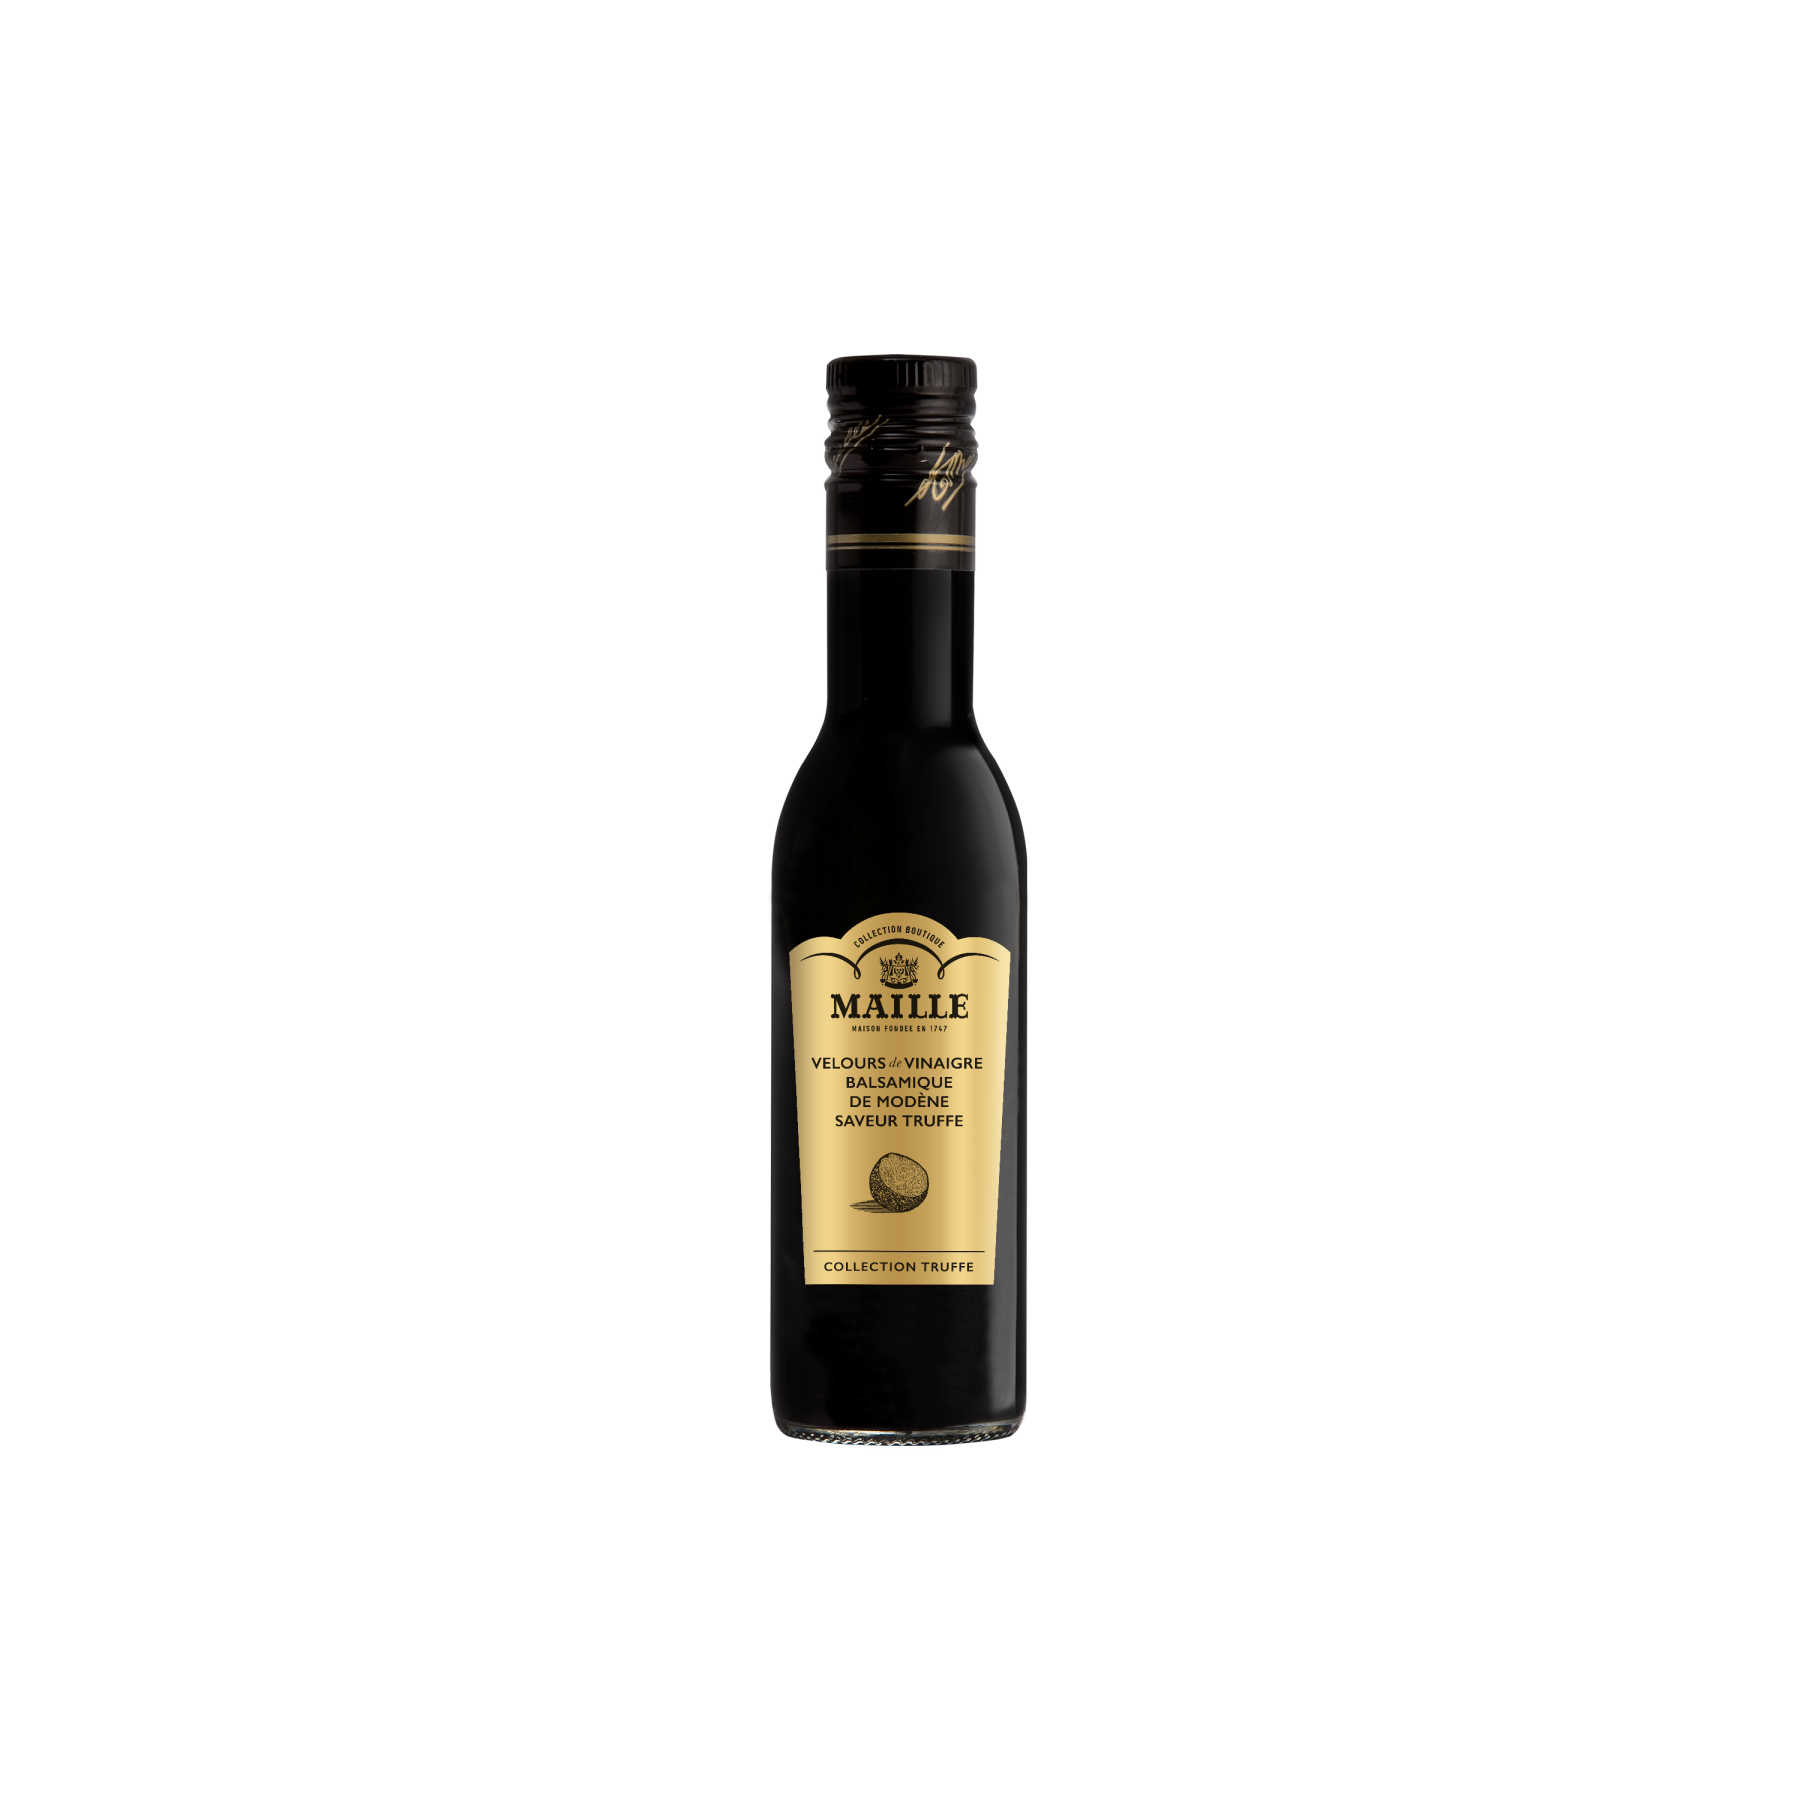 Maille - Velours de vinaigre balsamique de modene saveur truffe, 250 ml, overview